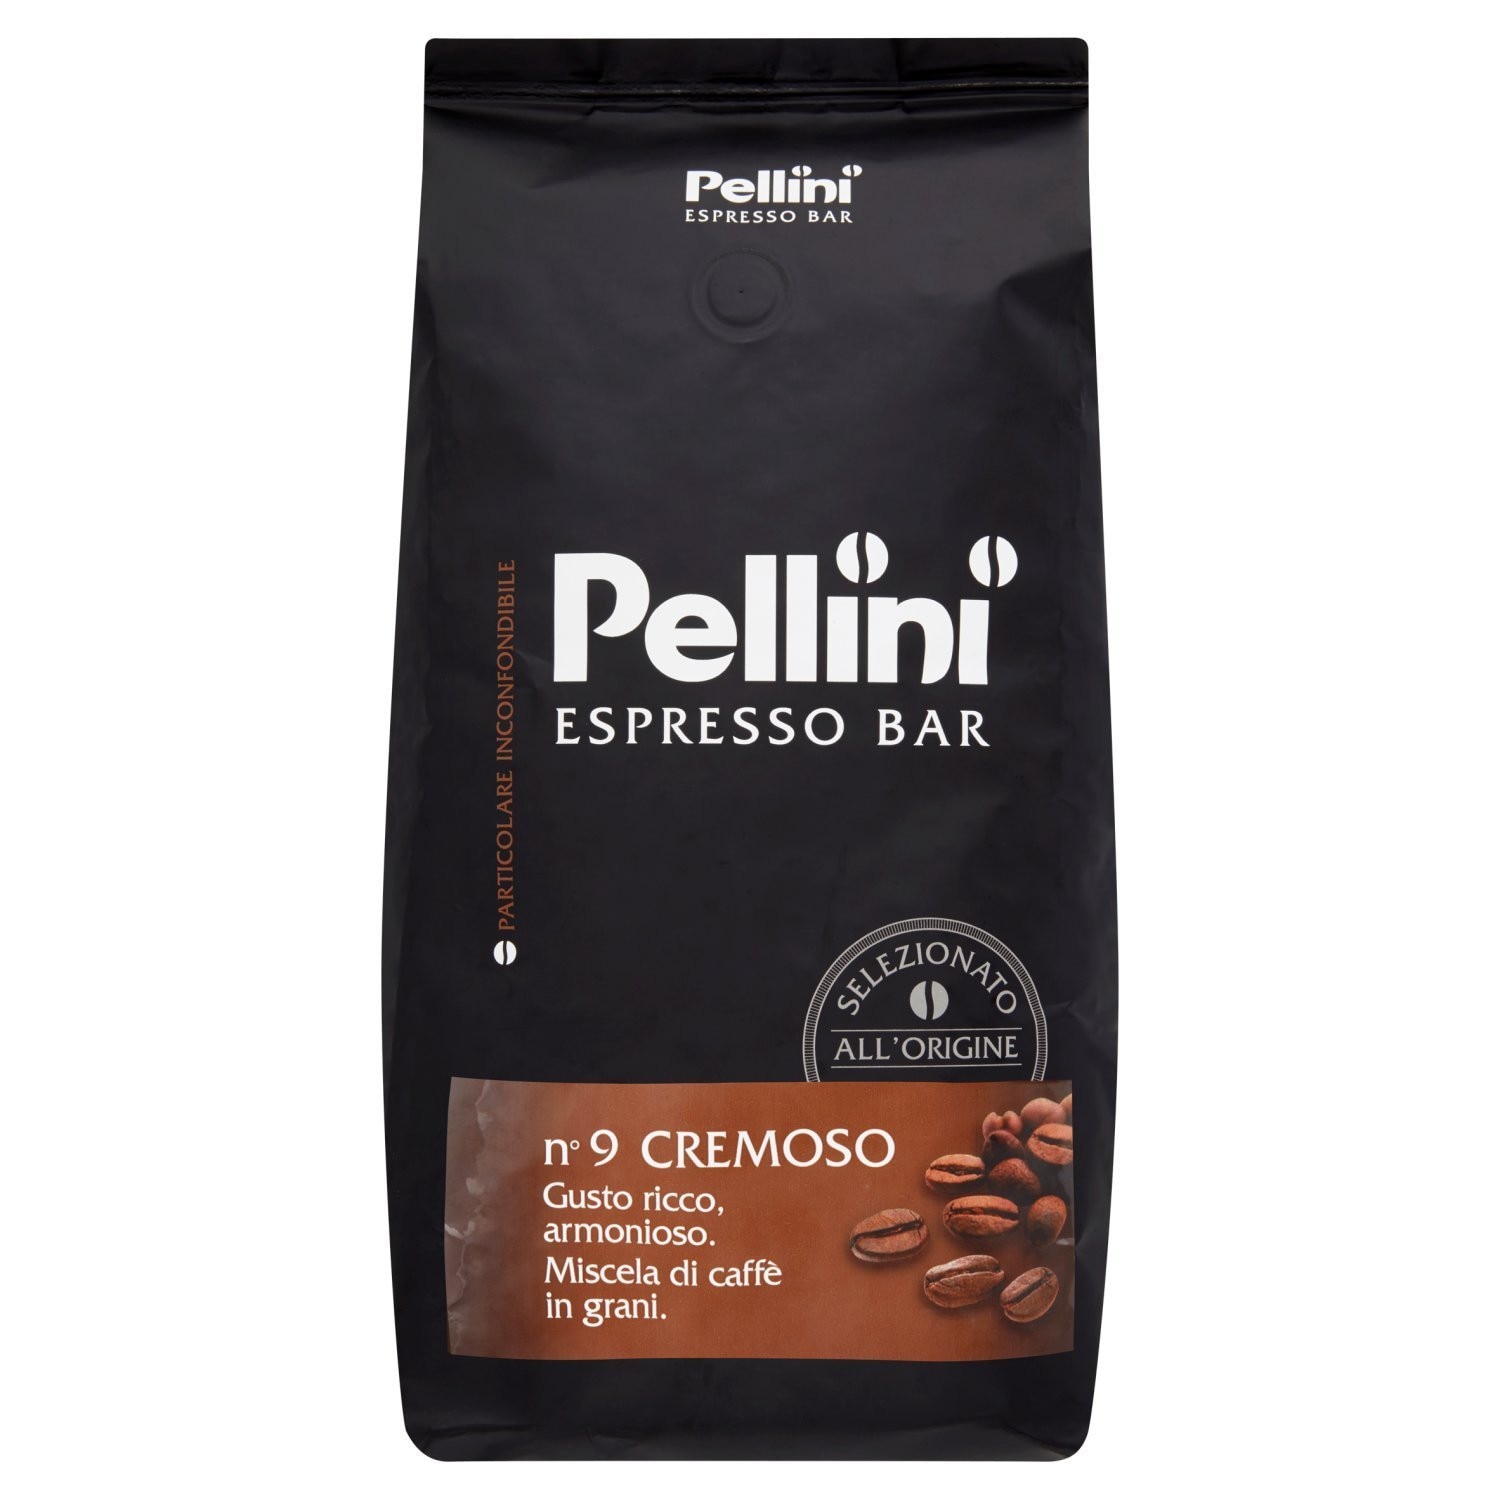 Precursor in progress Interpersonal Cafea boabe Pellini Espresso Bar Cremoso 1 kg - eMAG.ro